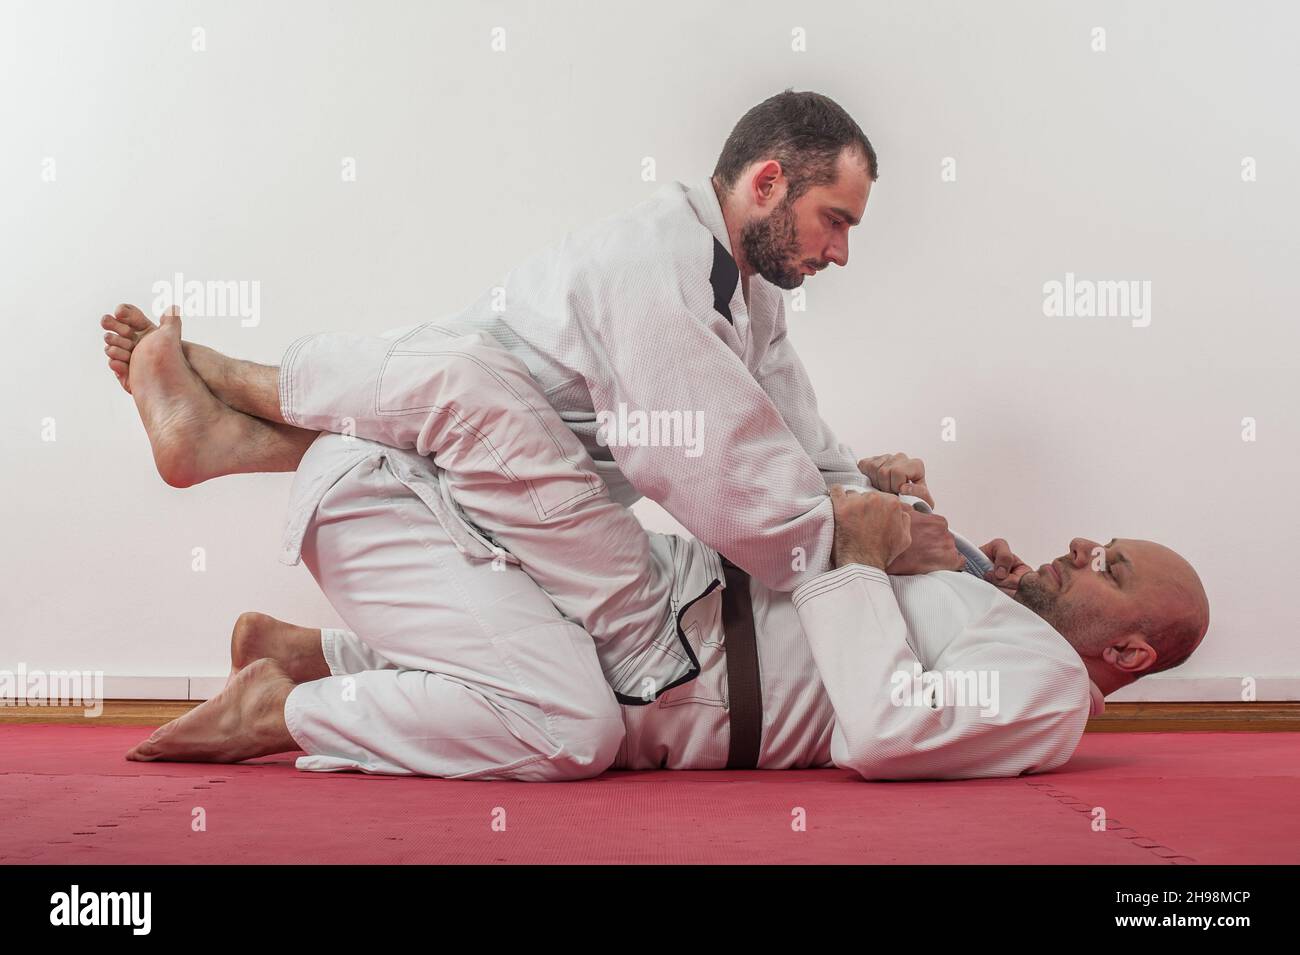 Démonstration brésilienne de formation au jiu-jitsu dans un kimono.BJJ  traditionnel en position fermée de garde Photo Stock - Alamy